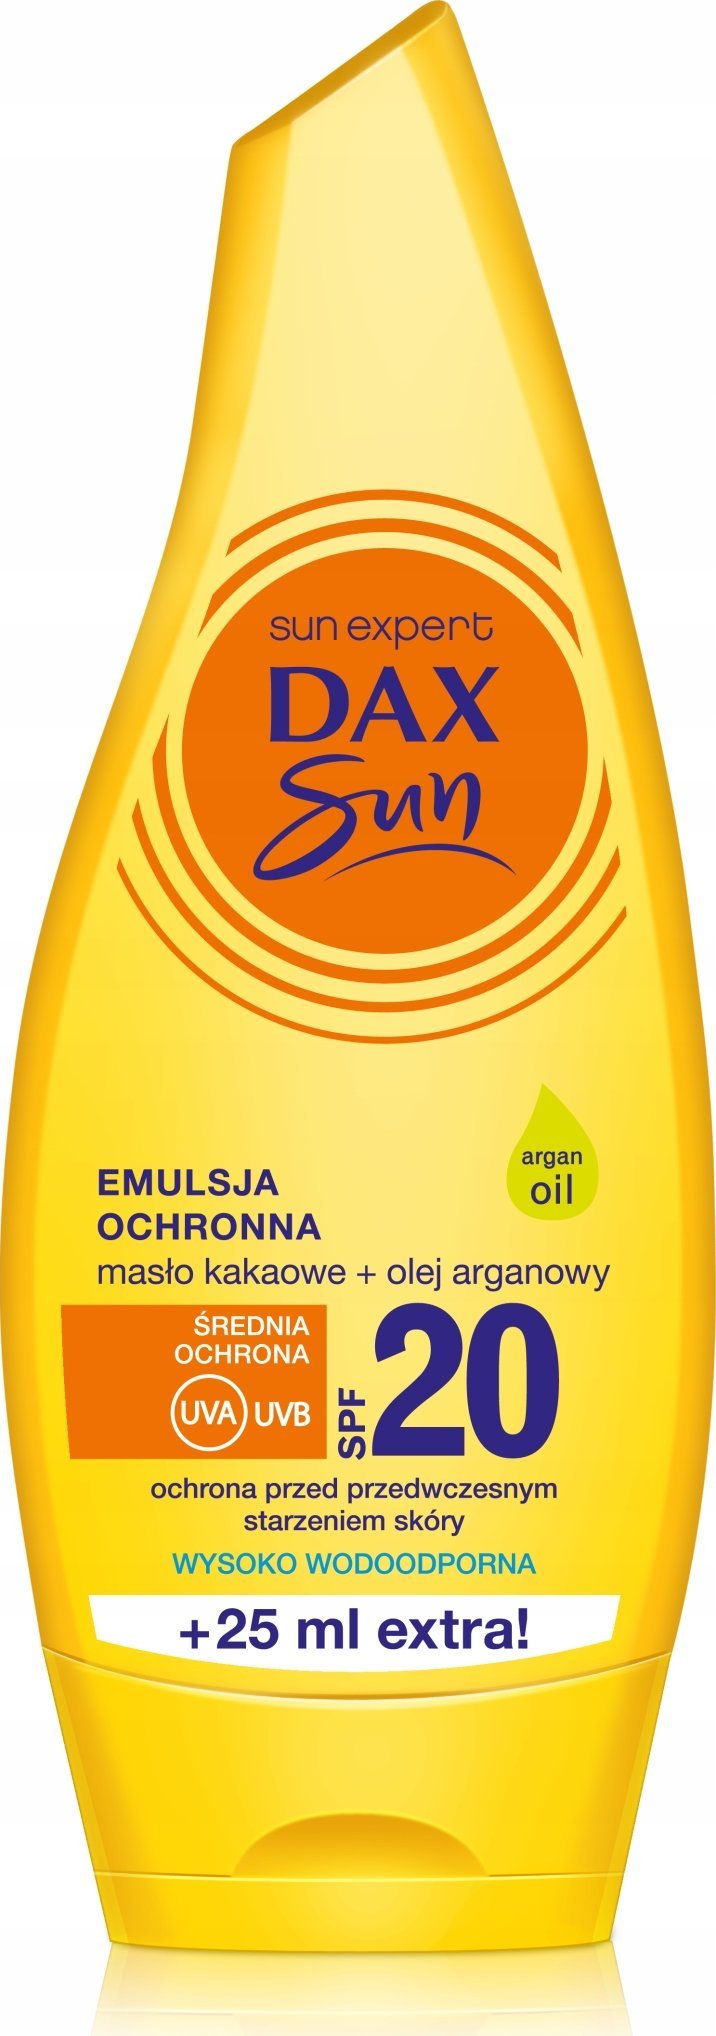 DAX Dax Sun Emulsja ochronna do opalania z maslem kakaowym i olejem arganowym SPF20 175ml 073435